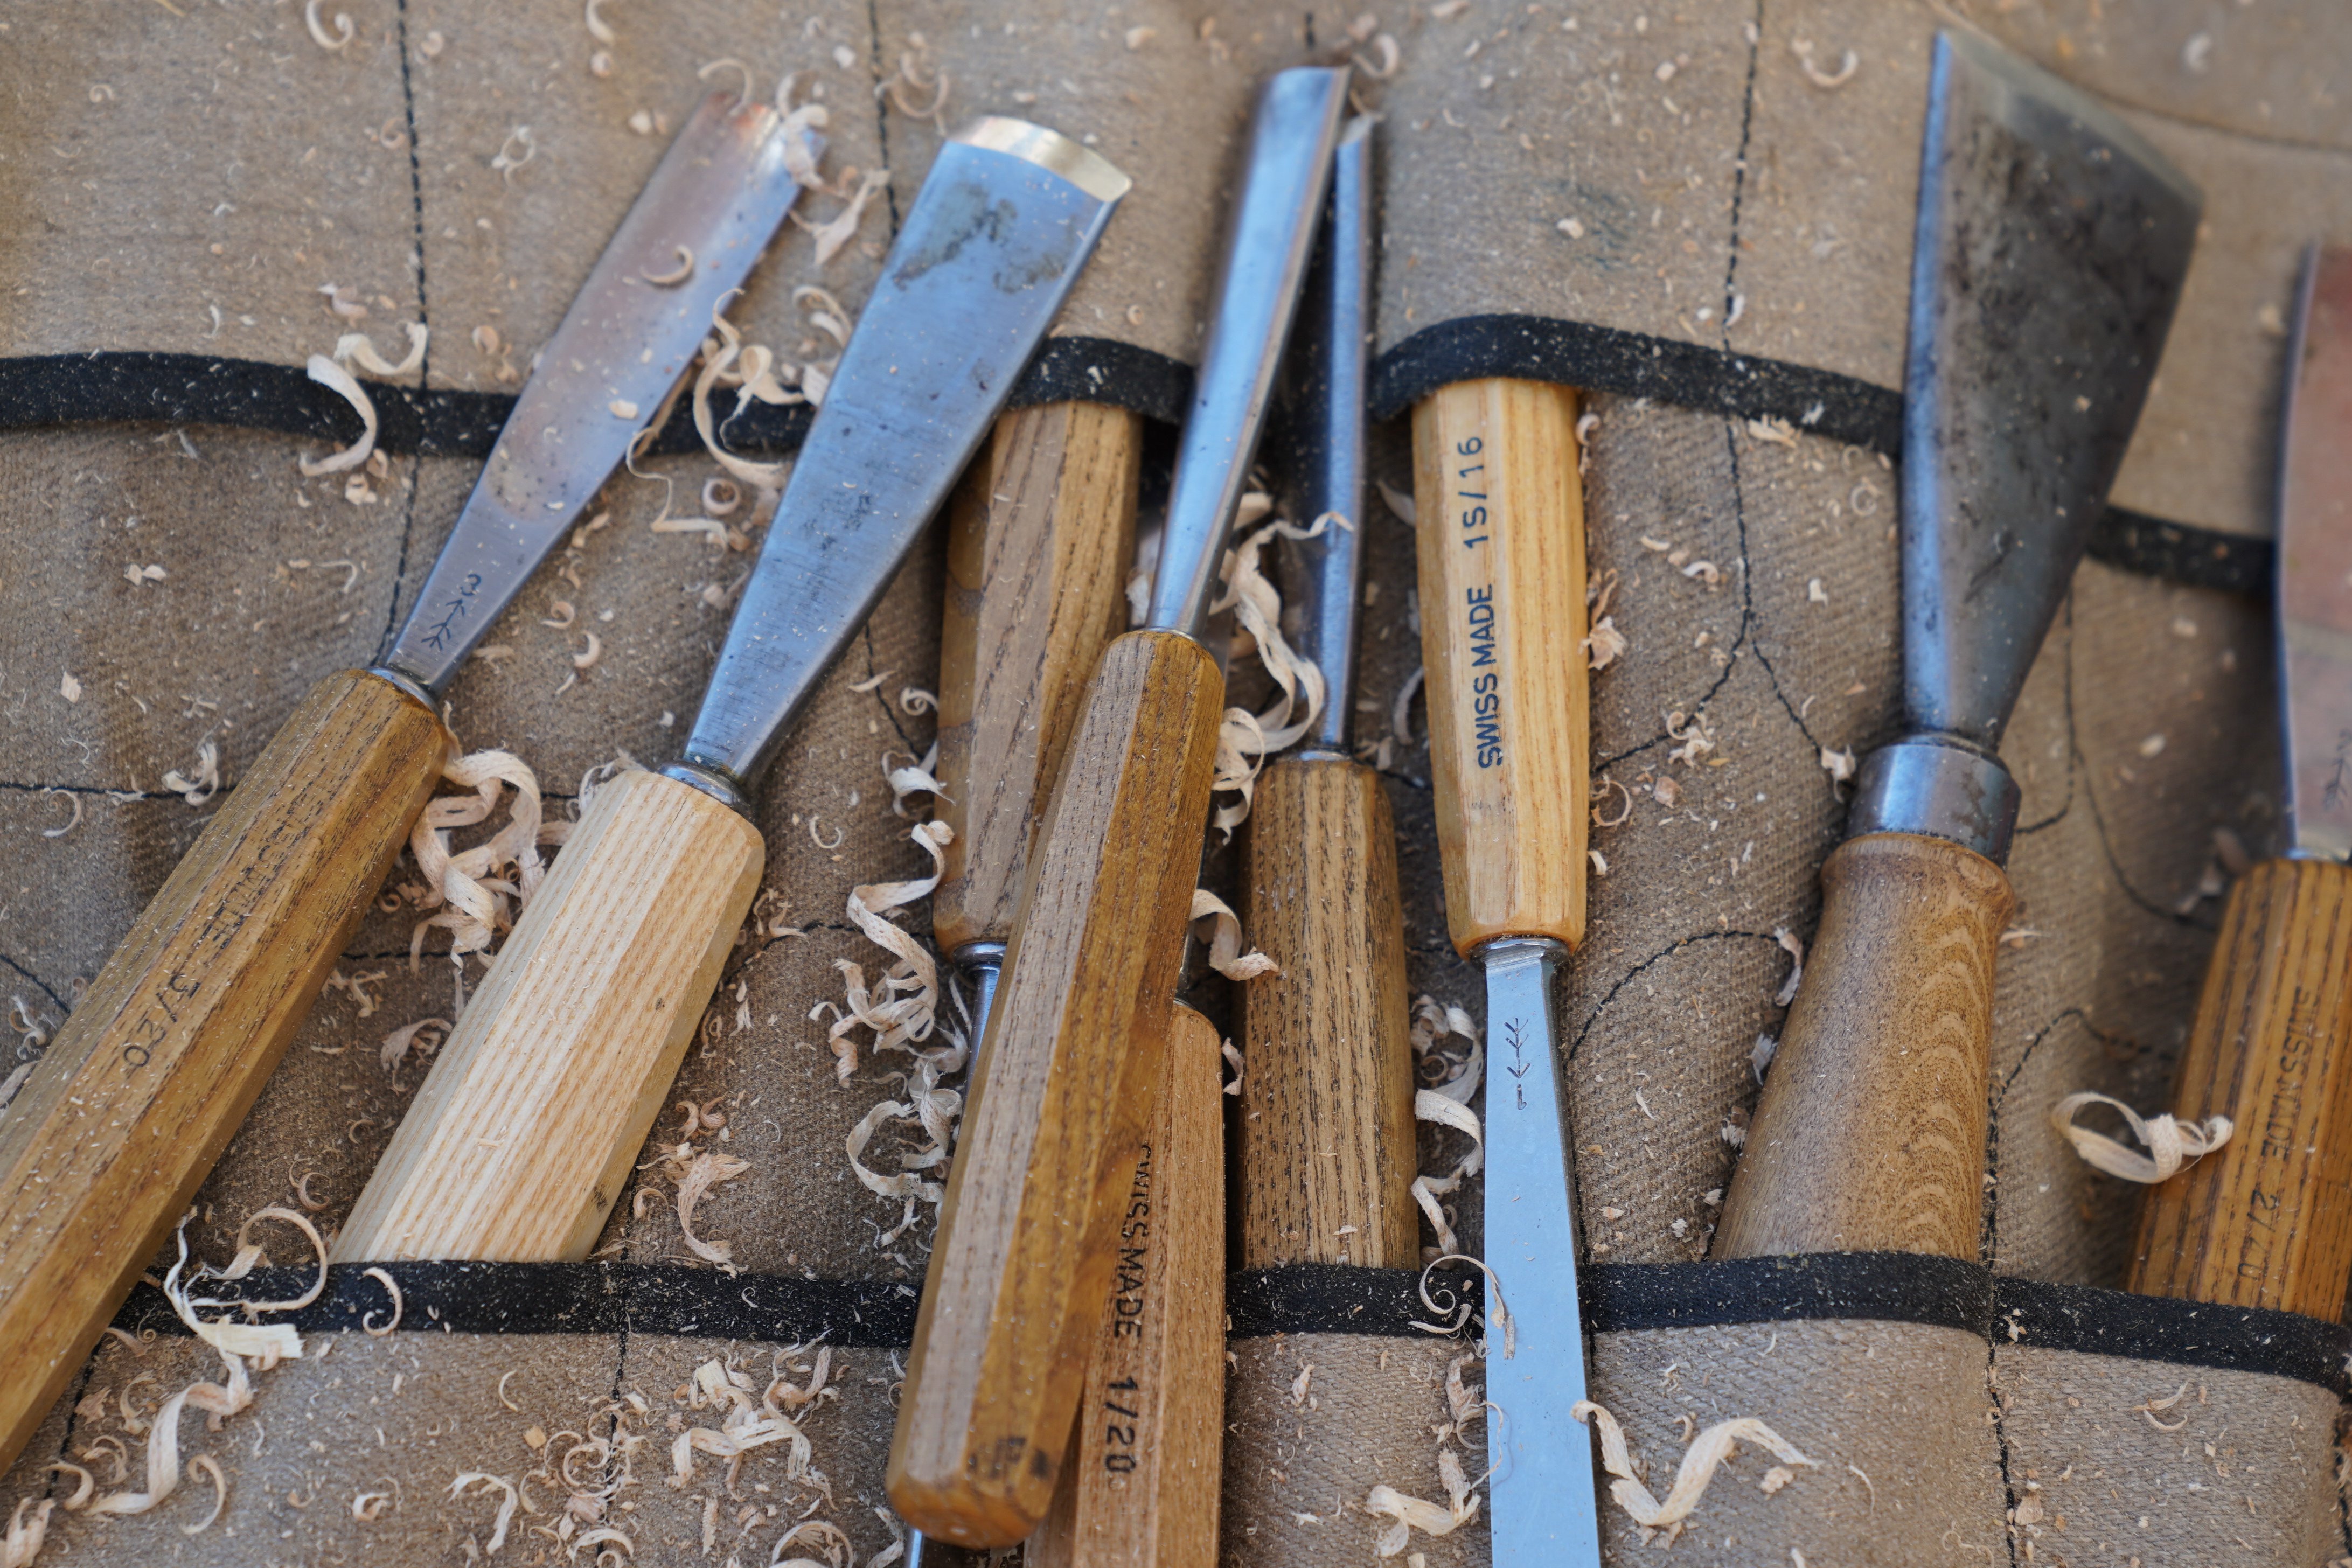  Bild zeigt Werkzeuge von Holzbildhauern. 